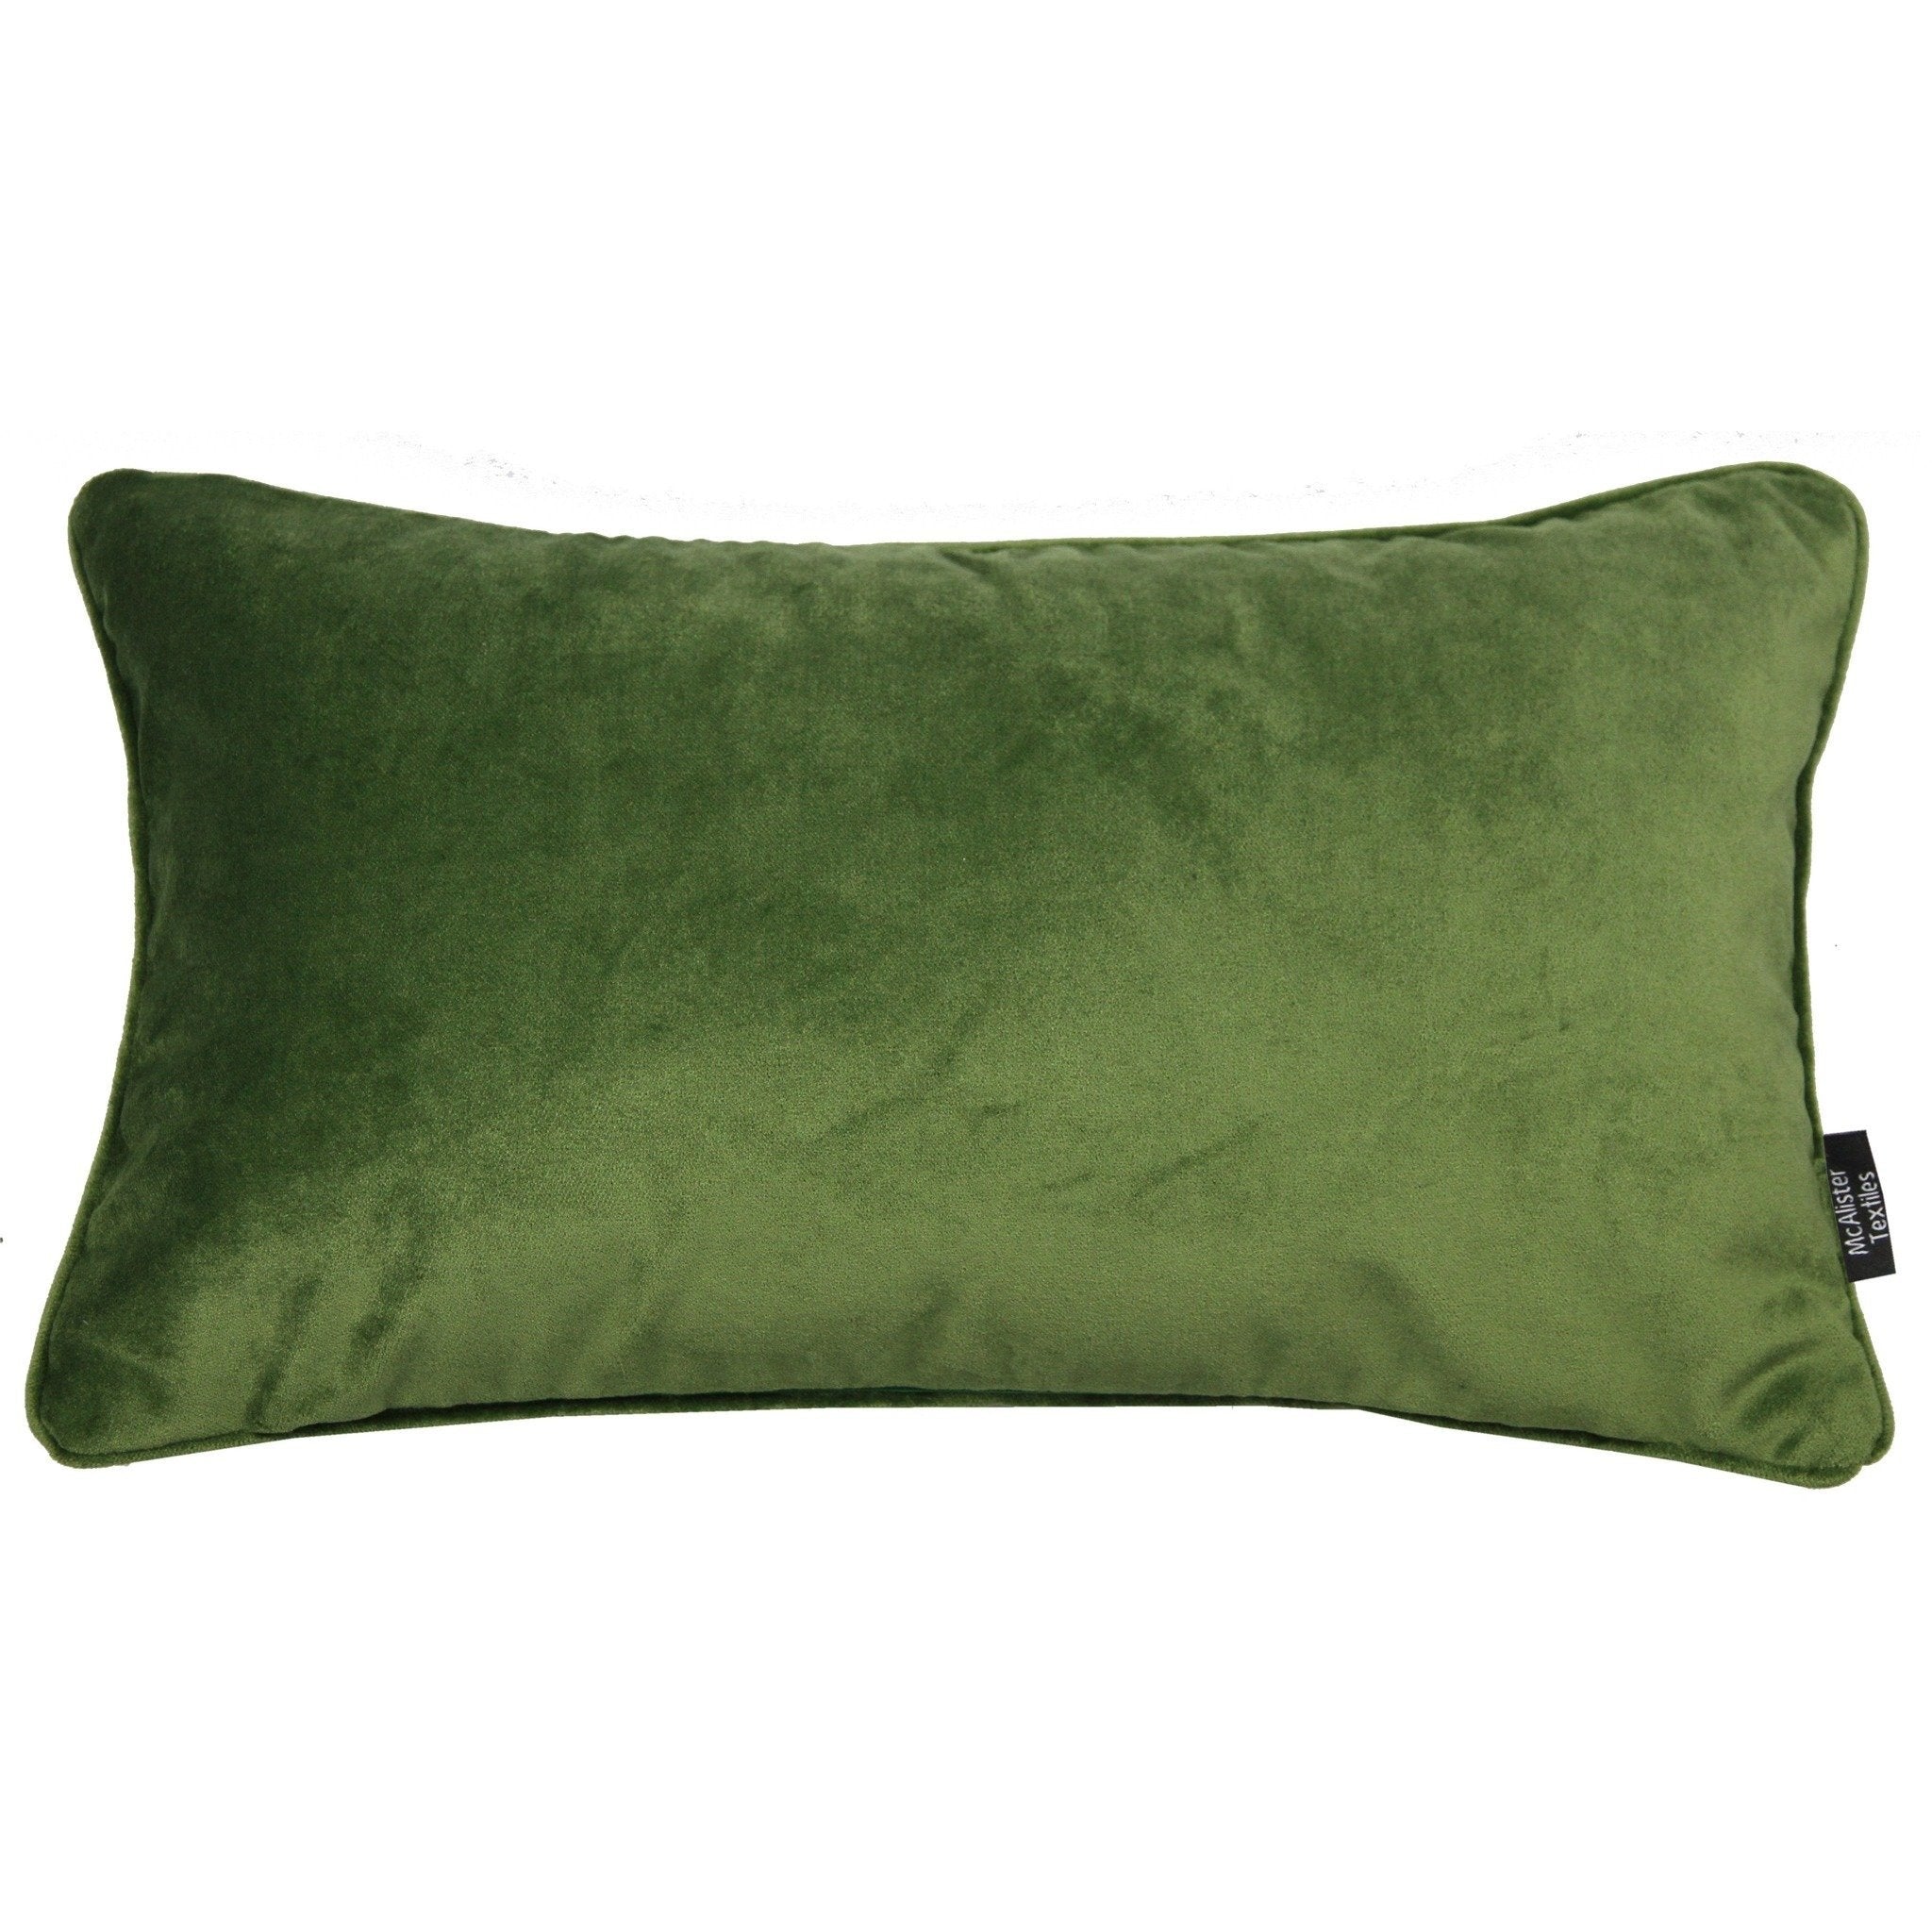 McAlister Textiles Matt Fern Green Velvet Pillow Pillow Cover Only 50cm x 30cm 